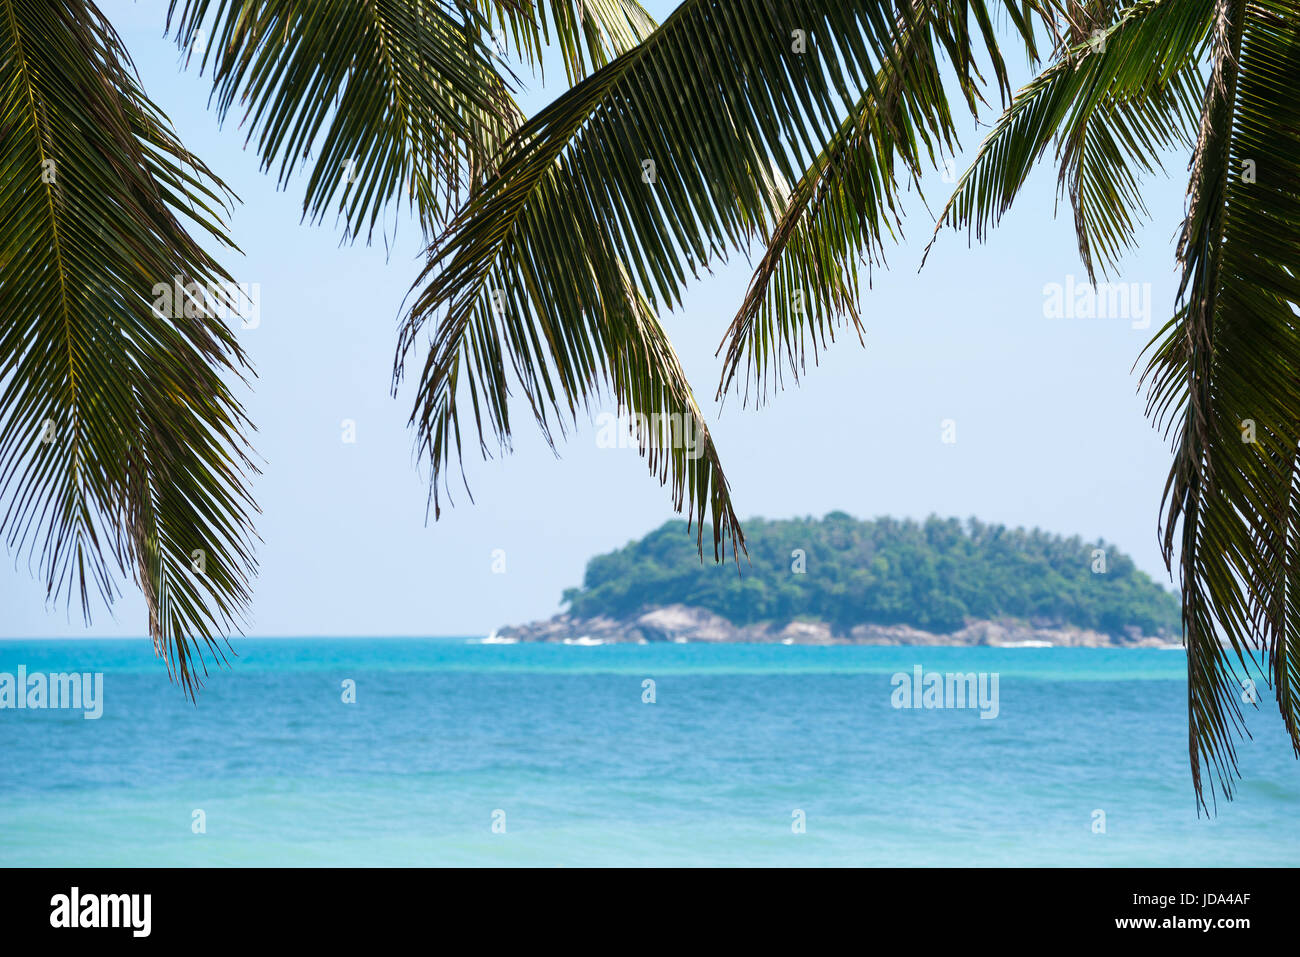 Durante el día el fondo playa tropical con palmera de coco en primer plano y el mar y a la isla de fondo borroso. Foto de stock